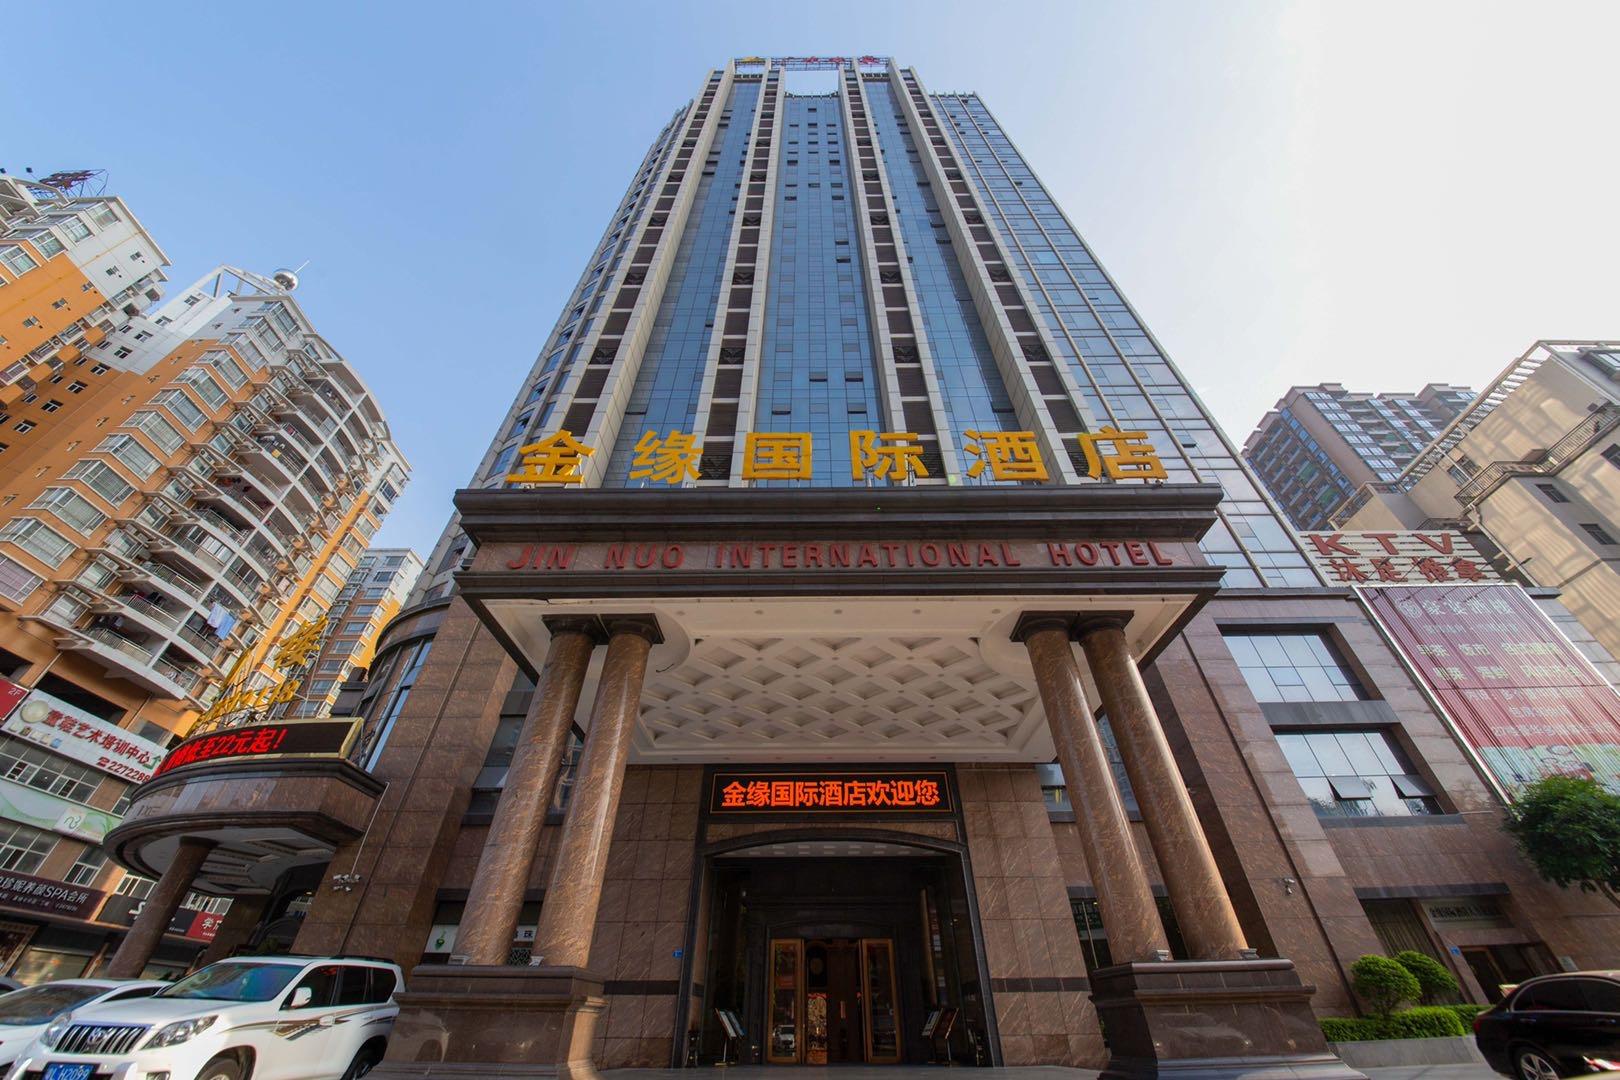 惠州五星级酒店最大容纳450人的会议场地|惠州金缘国际酒店的价格与联系方式